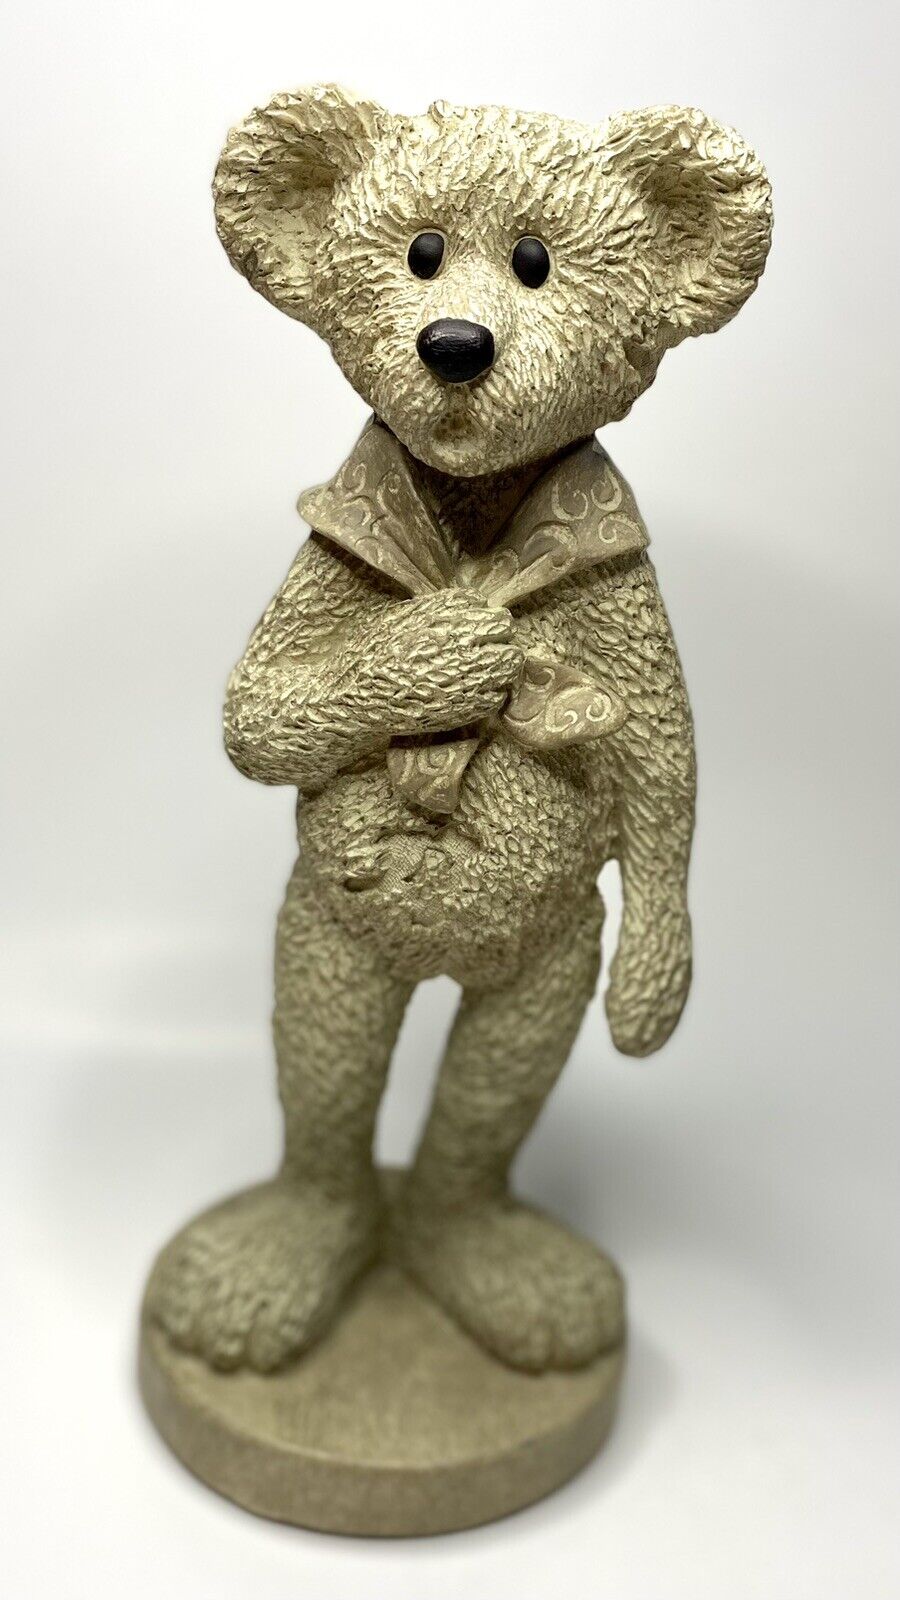 Bear 10.5” Tall Resin Statue Figure Dancing Bear Deadhead Teddy bear Teddybear